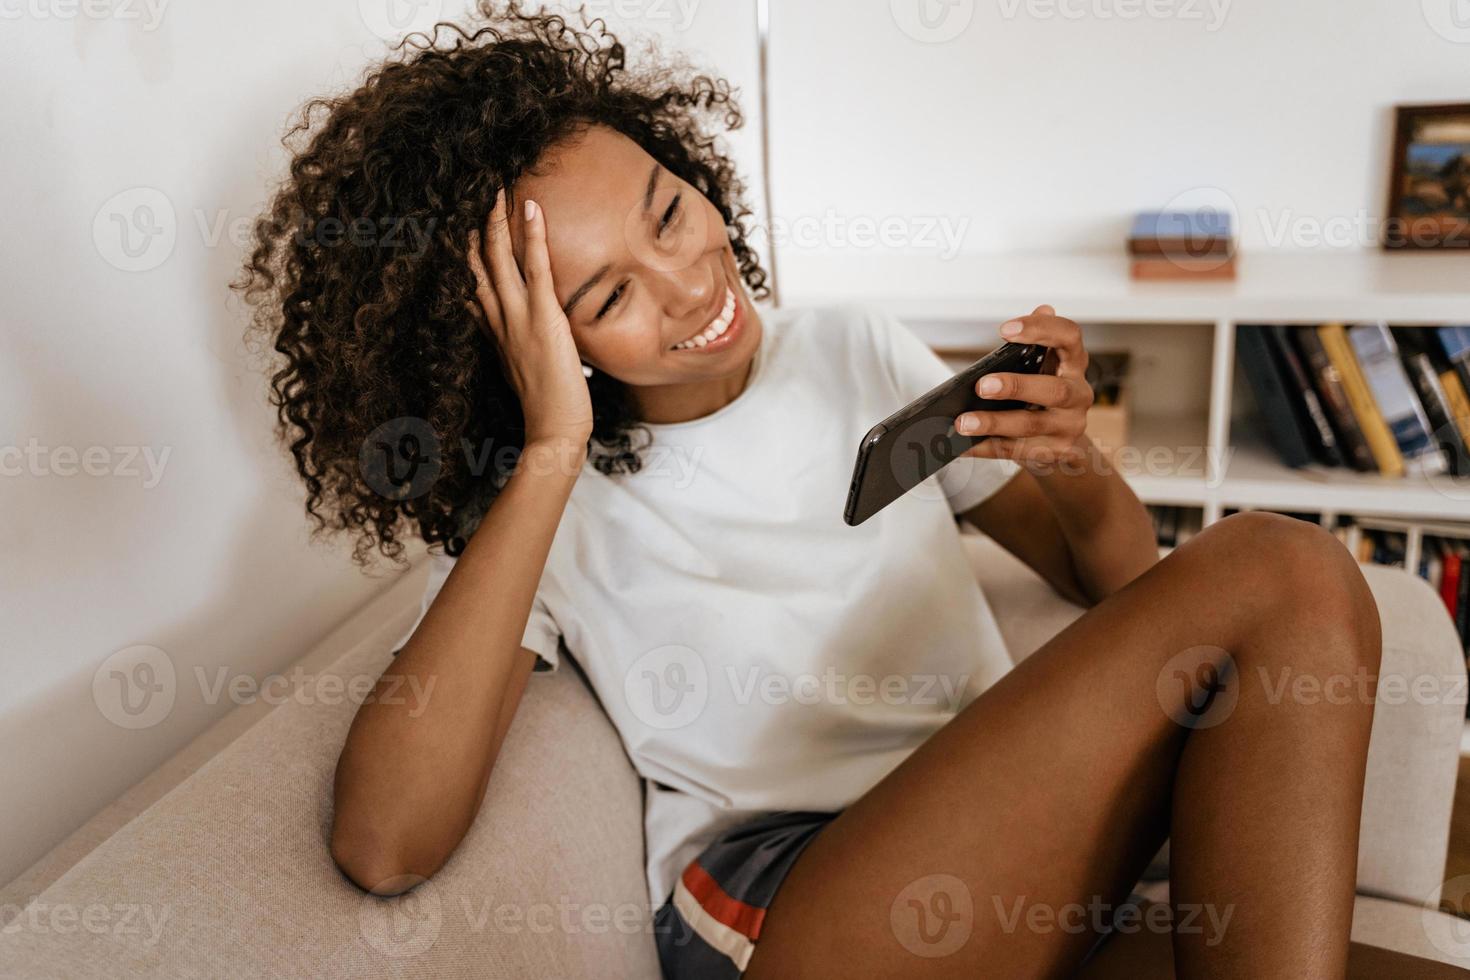 jovem negra com fones de ouvido usando o celular enquanto está descansando no sofá foto